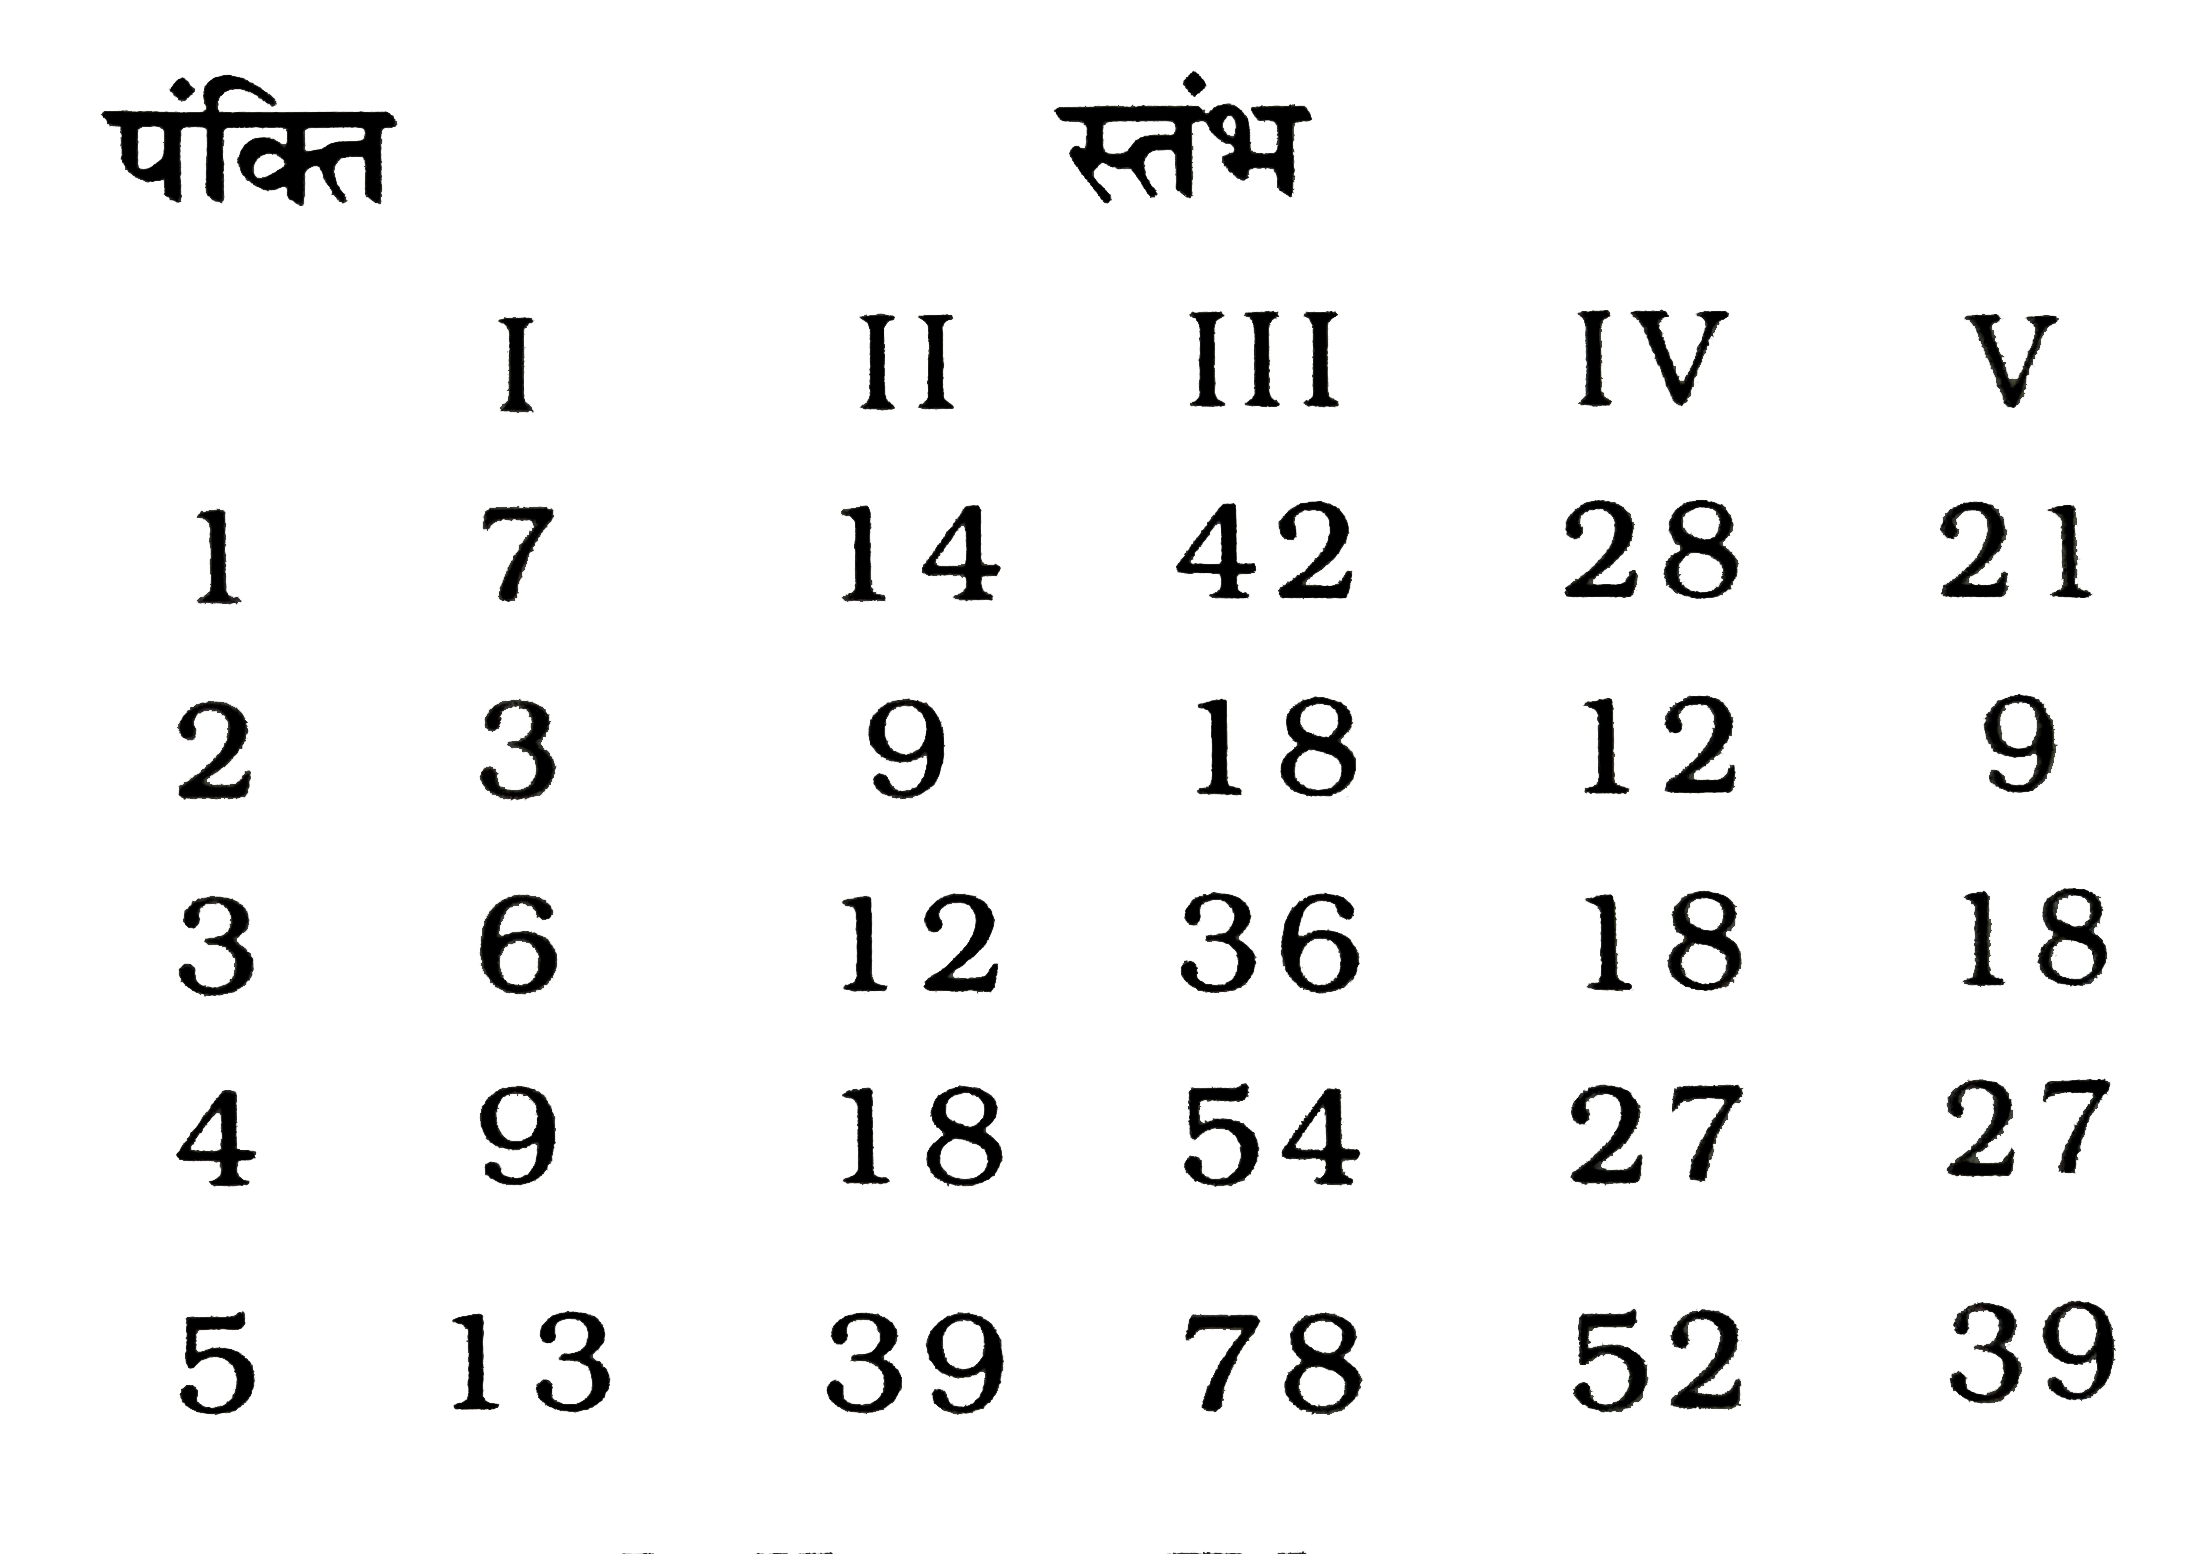 कुछ संख्याएं भिन्न -भिन्न पंक्तियाँ /स्तम्भों में दी गई है। इनमे से कौन-सी पंक्तियाँ/स्तम्भ आपस में किसी प्रकार संबधित / संबद्ध है?